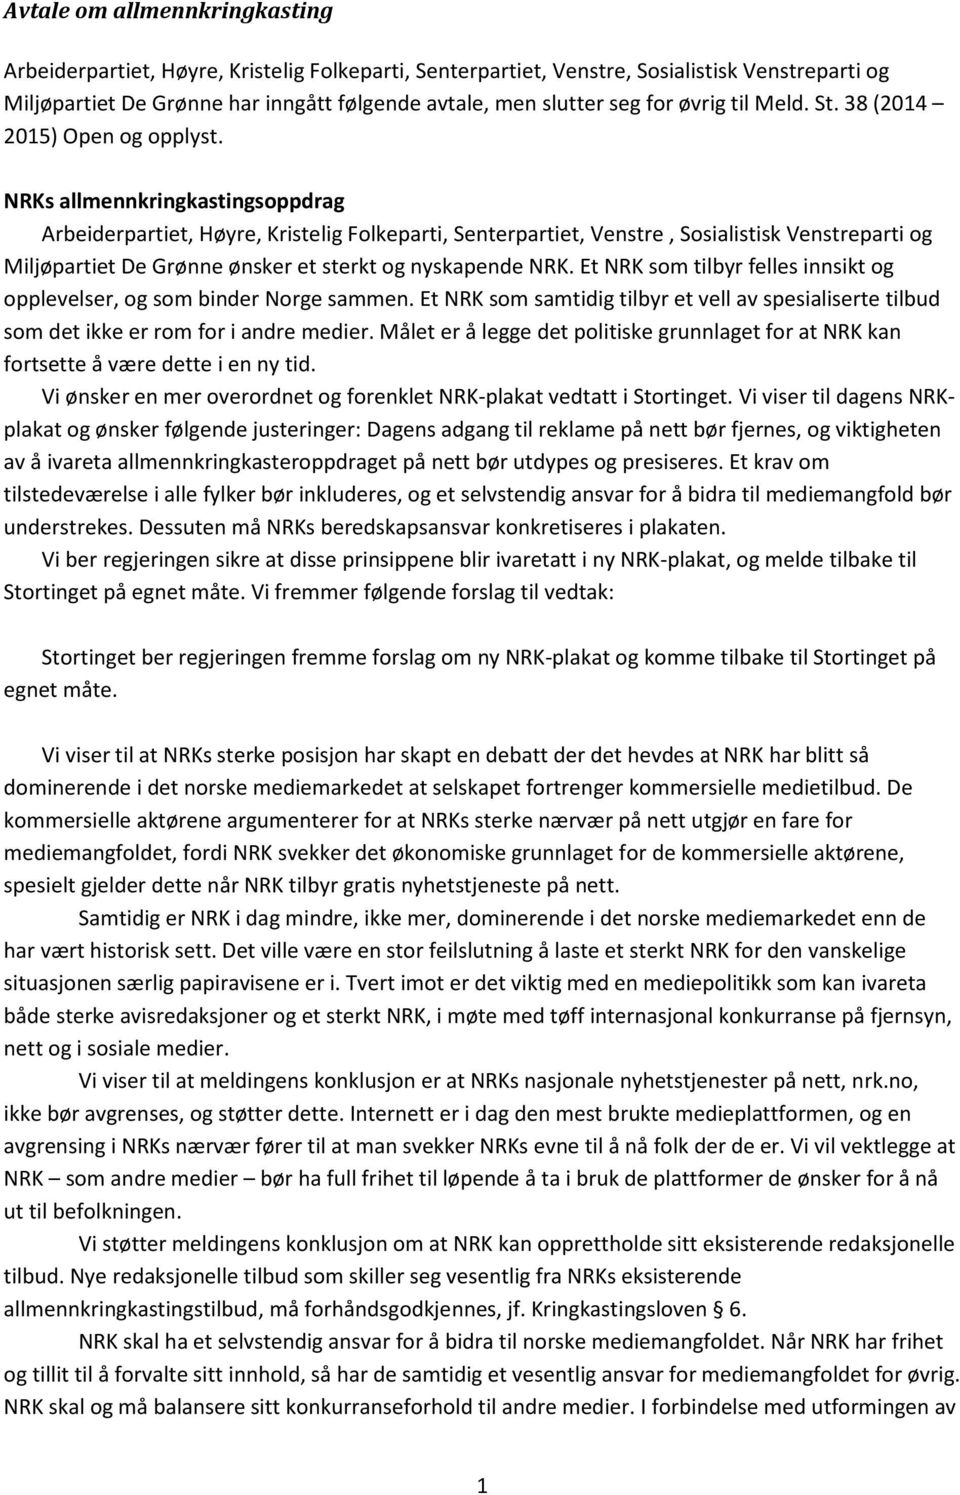 NRKs allmennkringkastingsoppdrag Arbeiderpartiet, Høyre, Kristelig Folkeparti, Senterpartiet, Venstre, Sosialistisk Venstreparti og Miljøpartiet De Grønne ønsker et sterkt og nyskapende NRK.